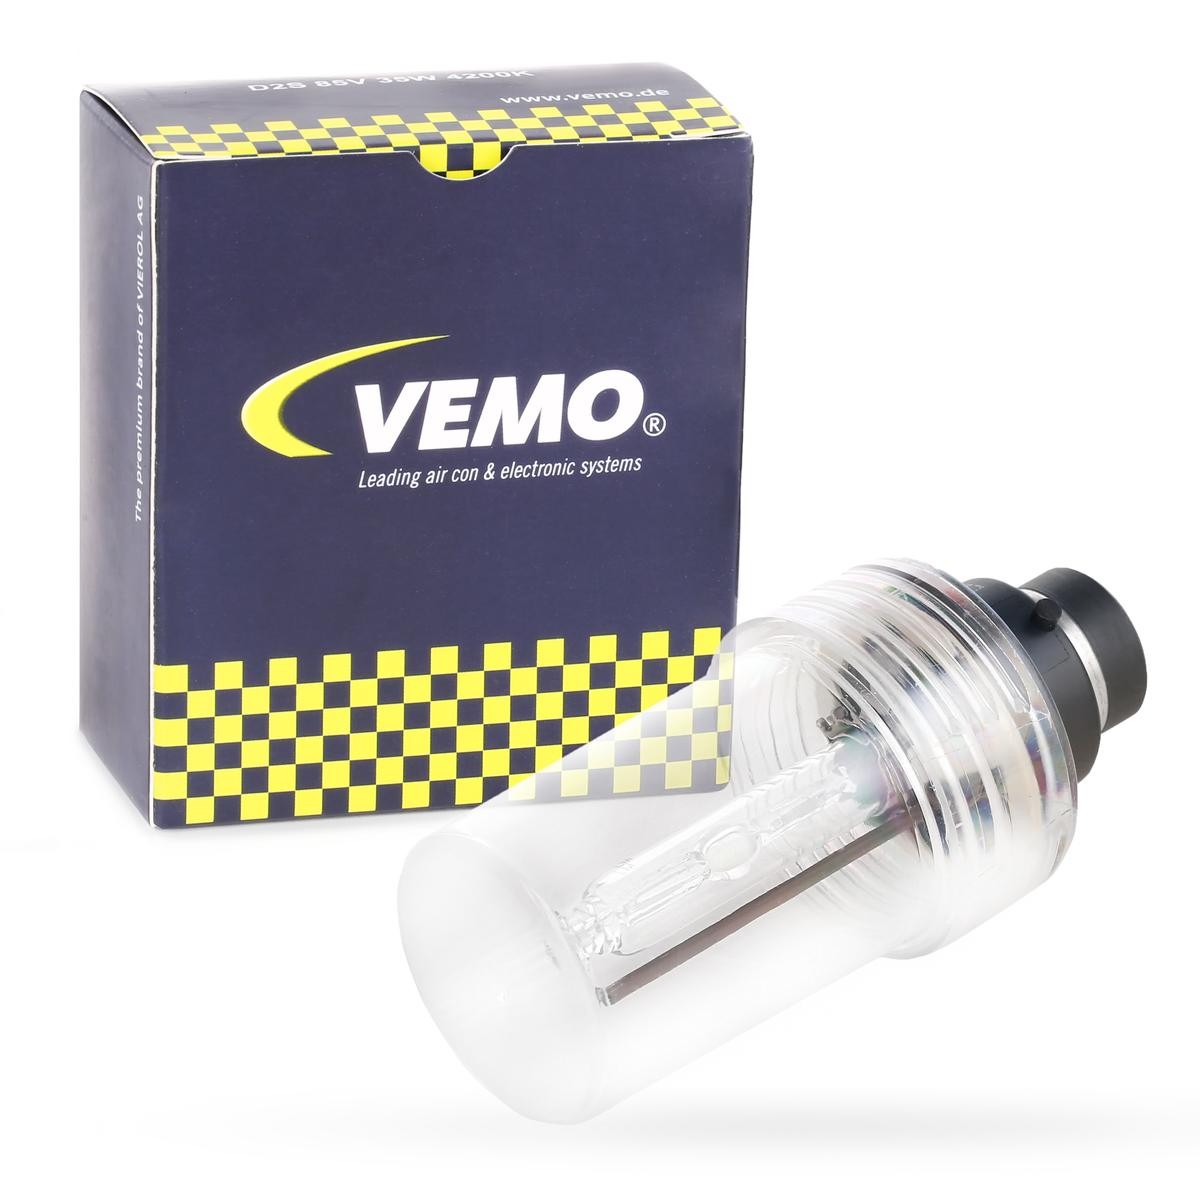 V99-84-0016 VEMO Headlight bulbs ROVER D2S 85V 35W P32d-2, 6000K, Xenon, Original VEMO Quality